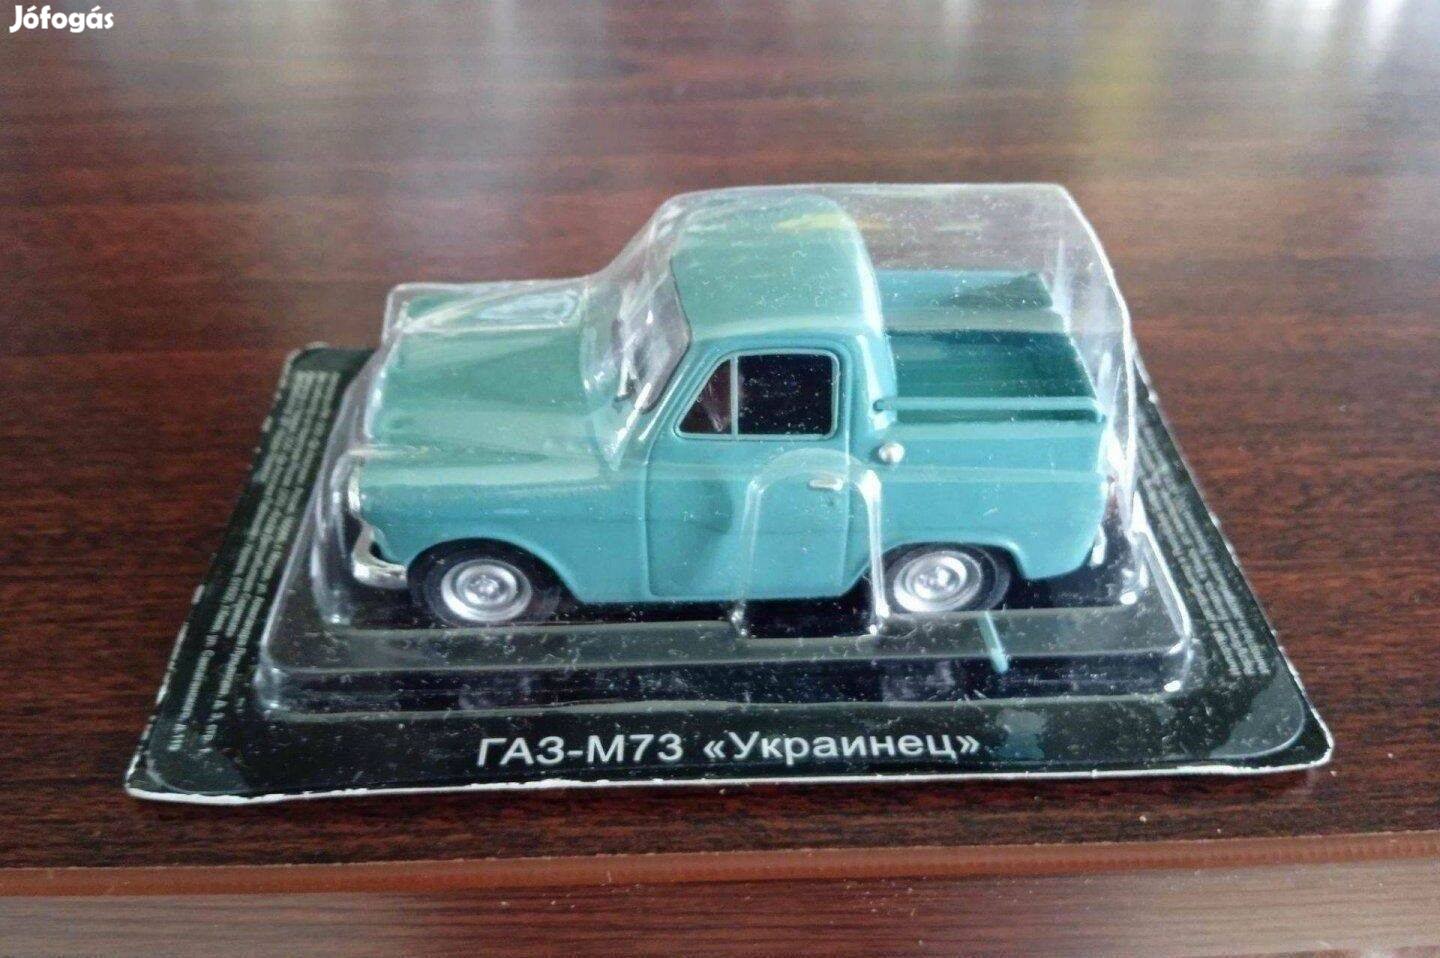 GAZ M73 "Pobeda pic-ap" "ukrainec" kisauto modell 1/43 Eladó